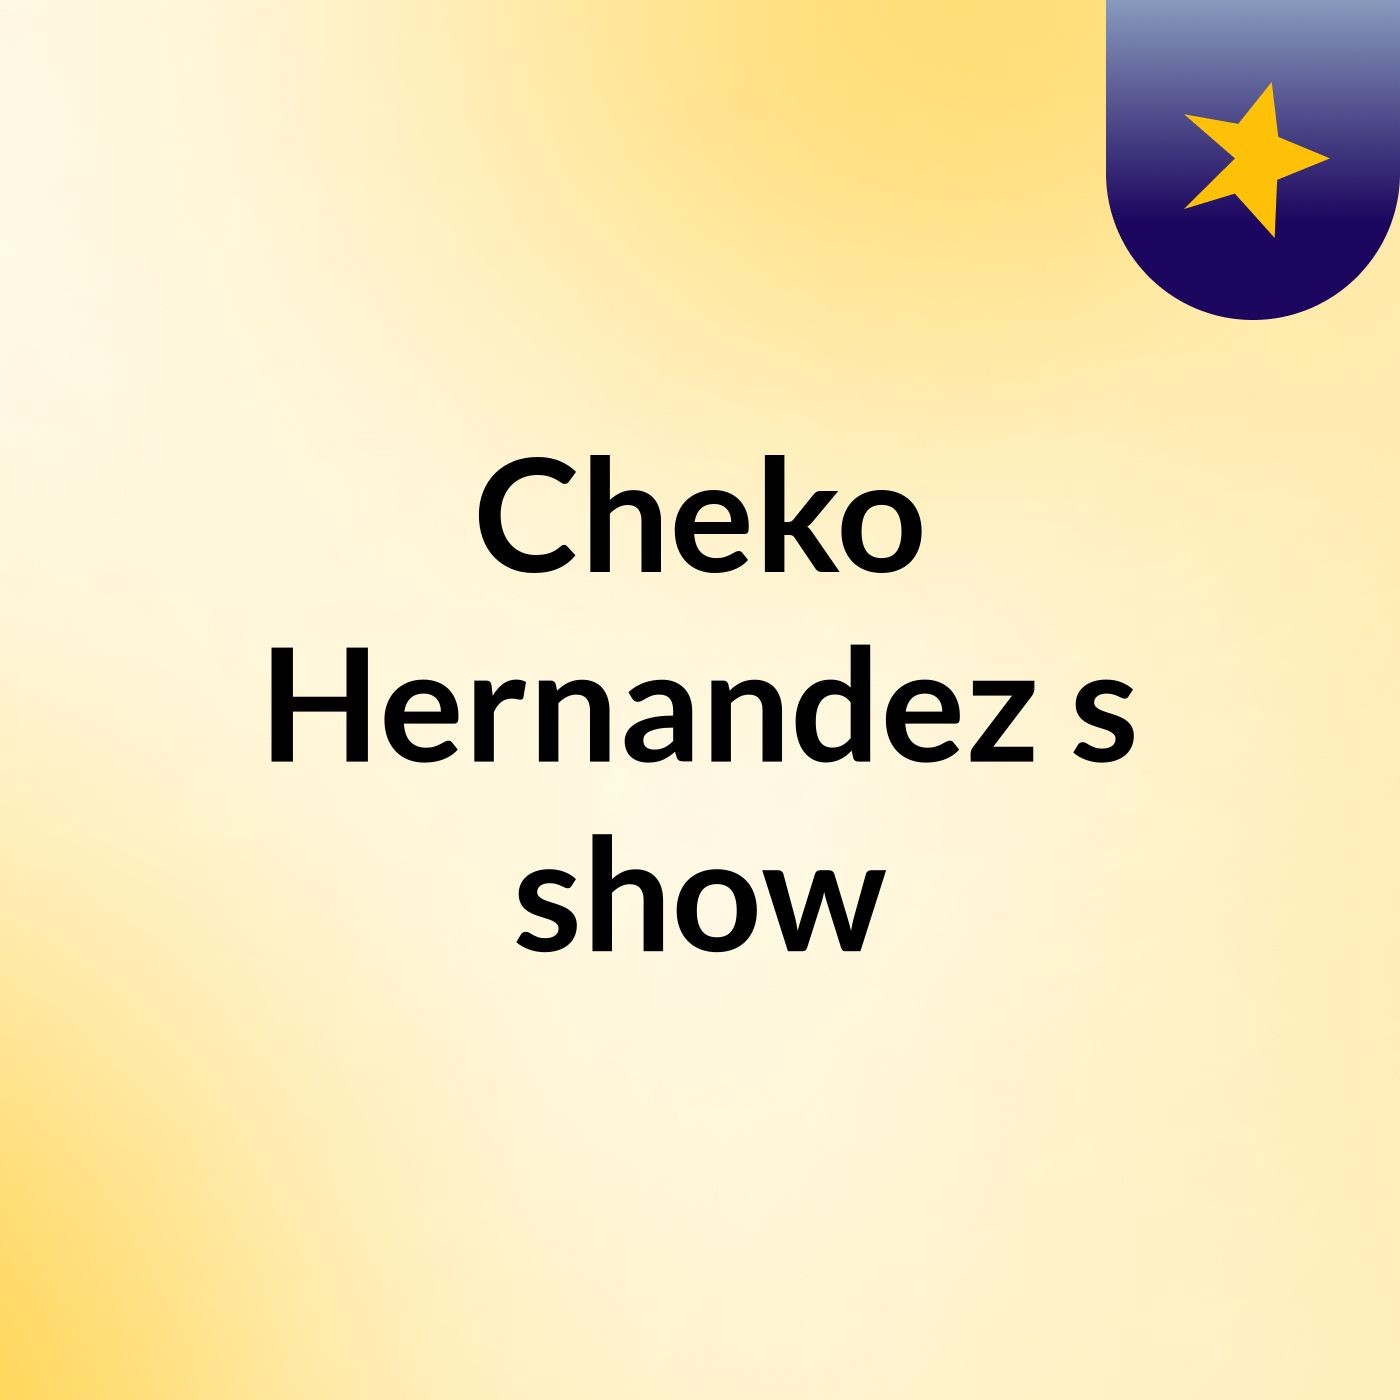 Cheko Hernandez's show